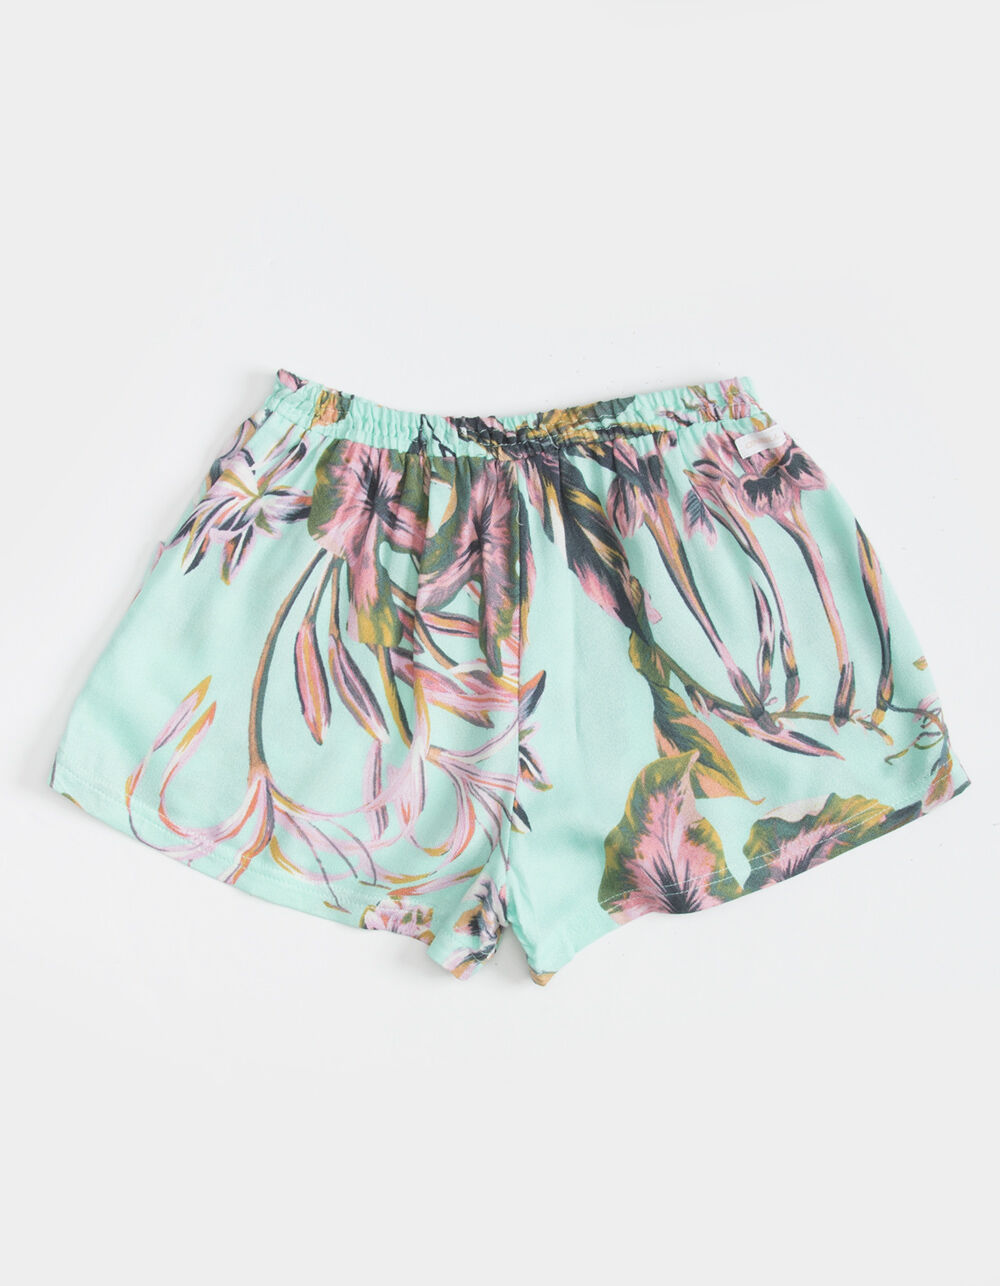 O'NEILL Merrick Girls Shorts - TURQUOISE COMBO | Tillys